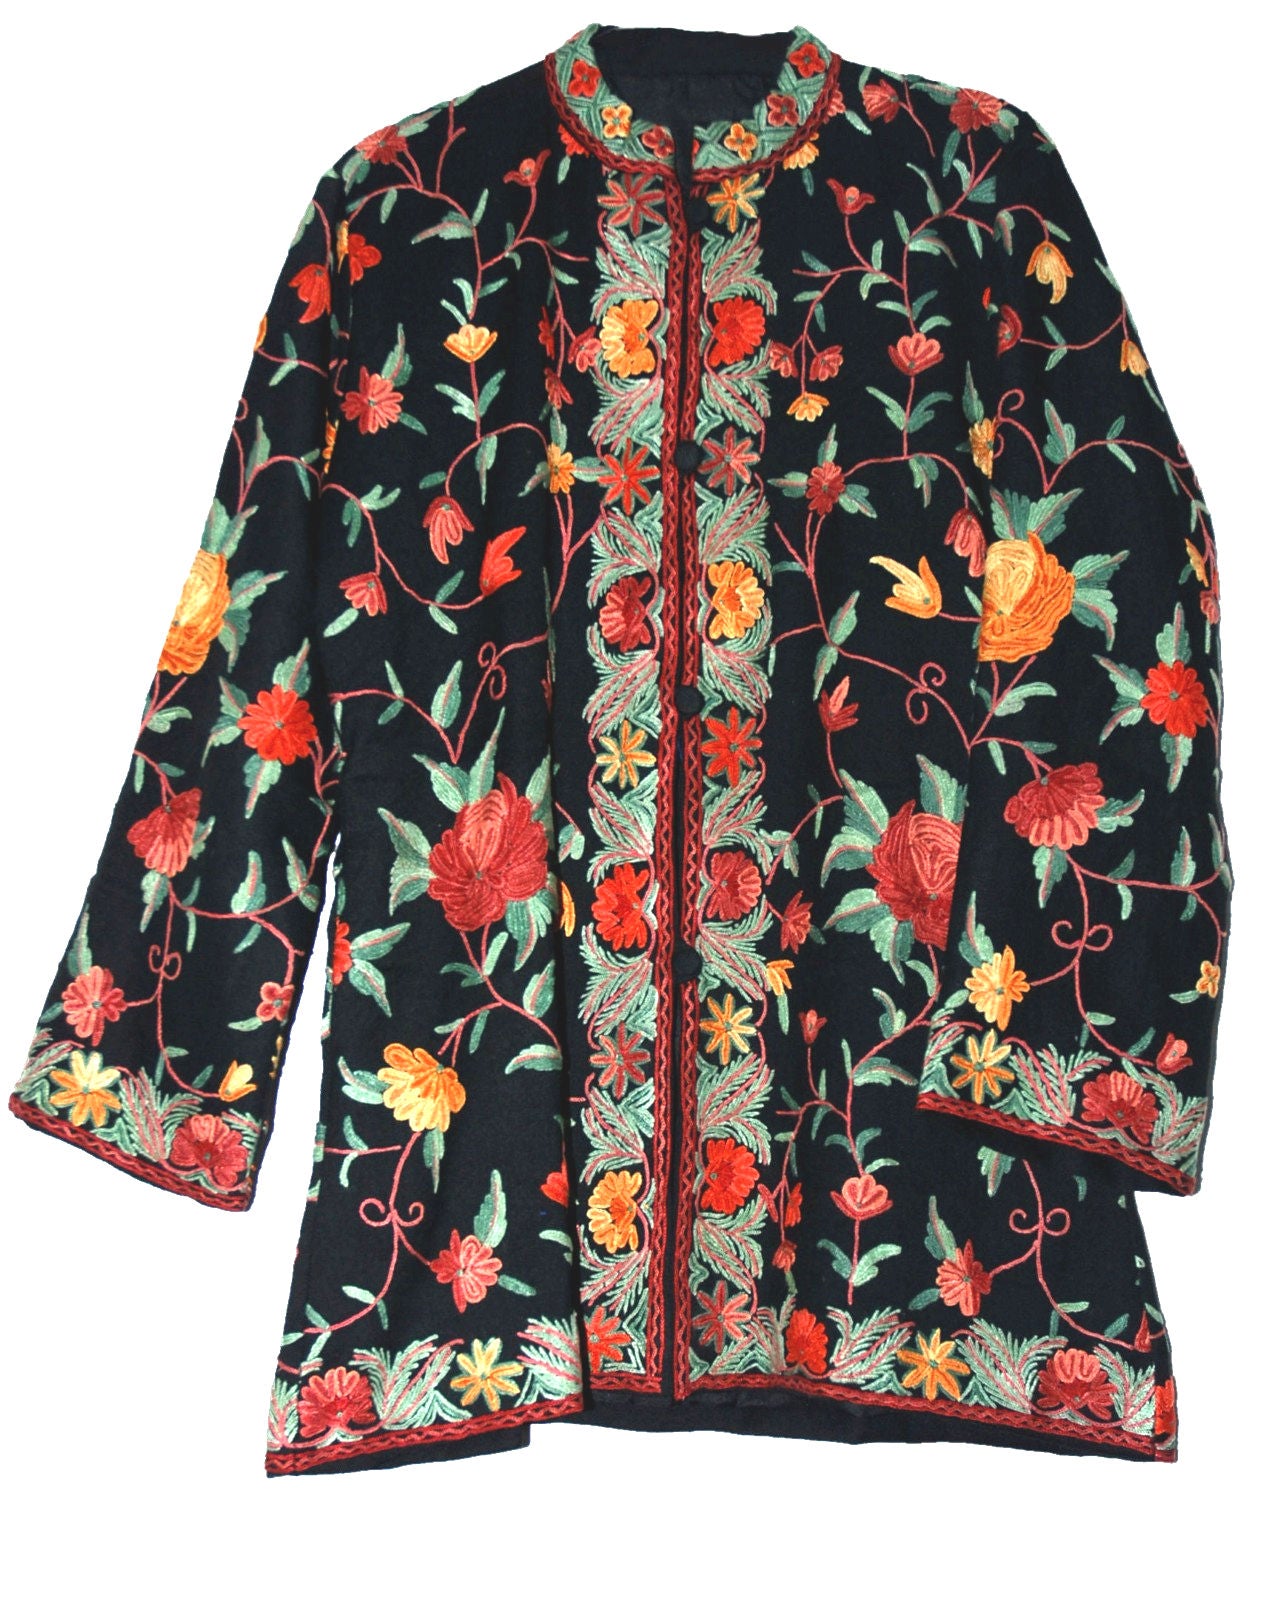 Woolen Short Jacket Black, Multicolor Embroidery #AO-0321